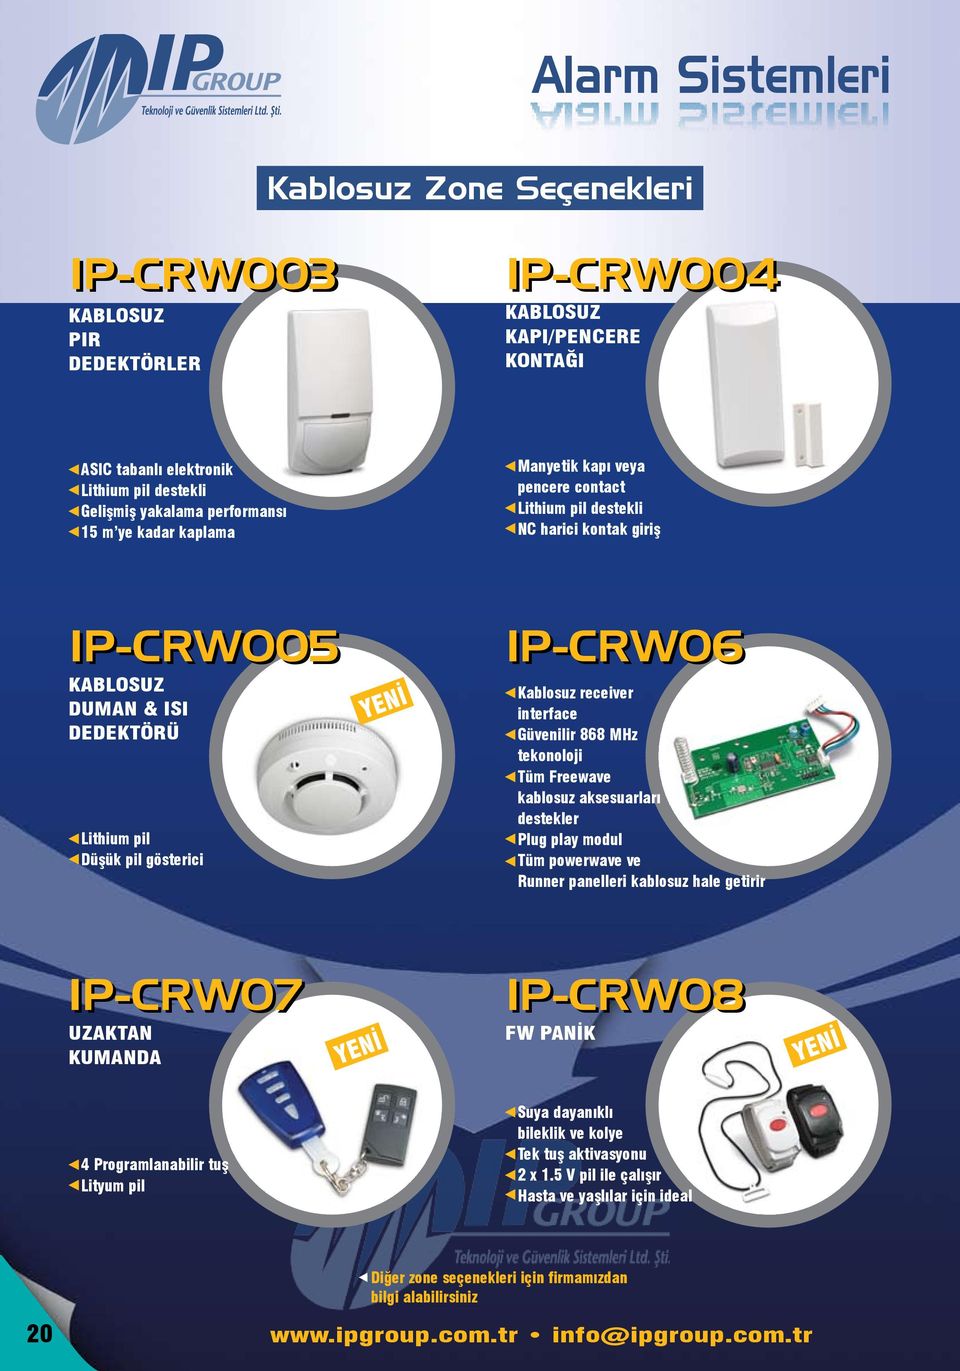 MHz tekonoloji Tüm Freewave kablosuz aksesuarları destekler Plug play modul Tüm powerwave ve Runner panelleri kablosuz hale getirir IP-CRW07 UZAKTAN KUMANDA YENİ IP-CRW08 FW PANİK YENİ 4